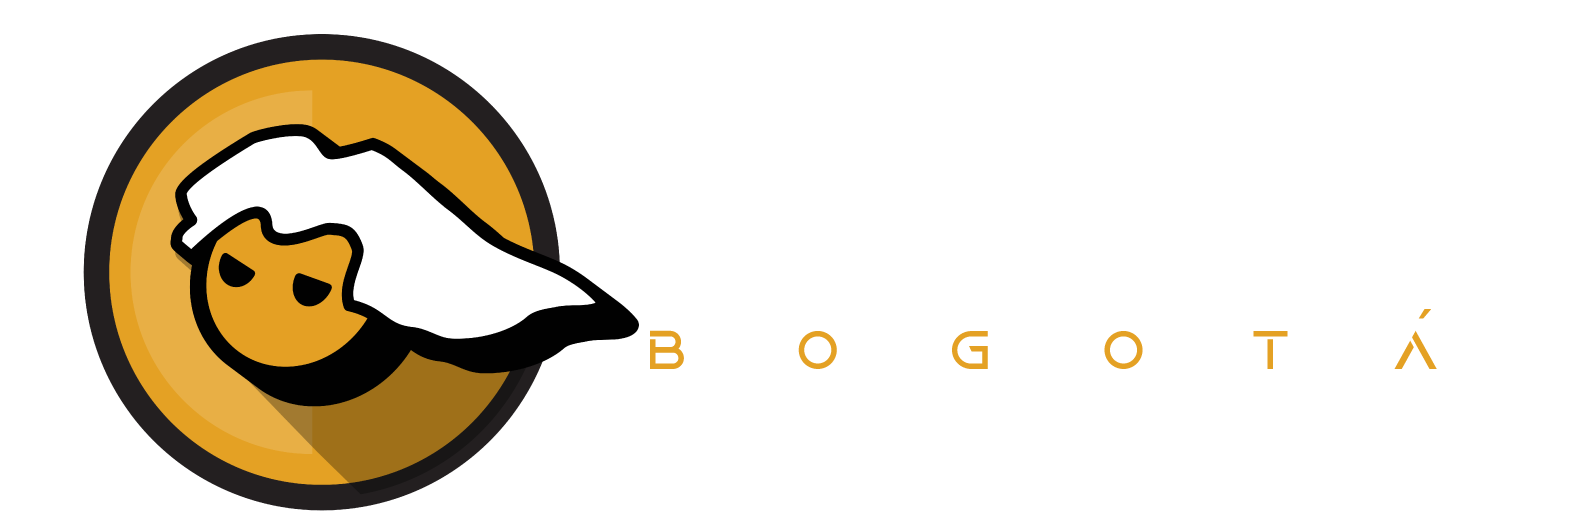 PC MASTERS BOGOTA